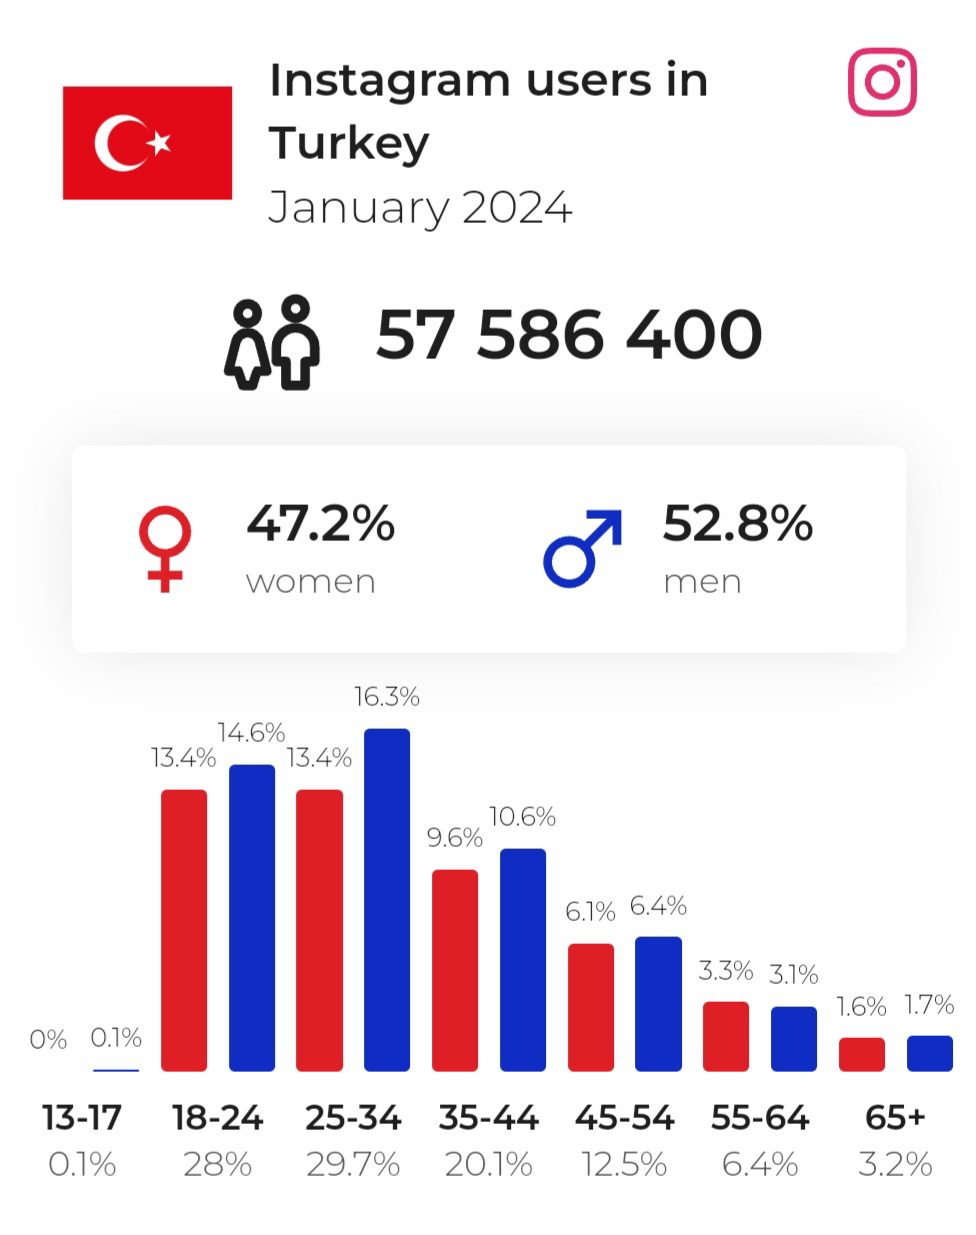 Instagram users in Turkey in 2024